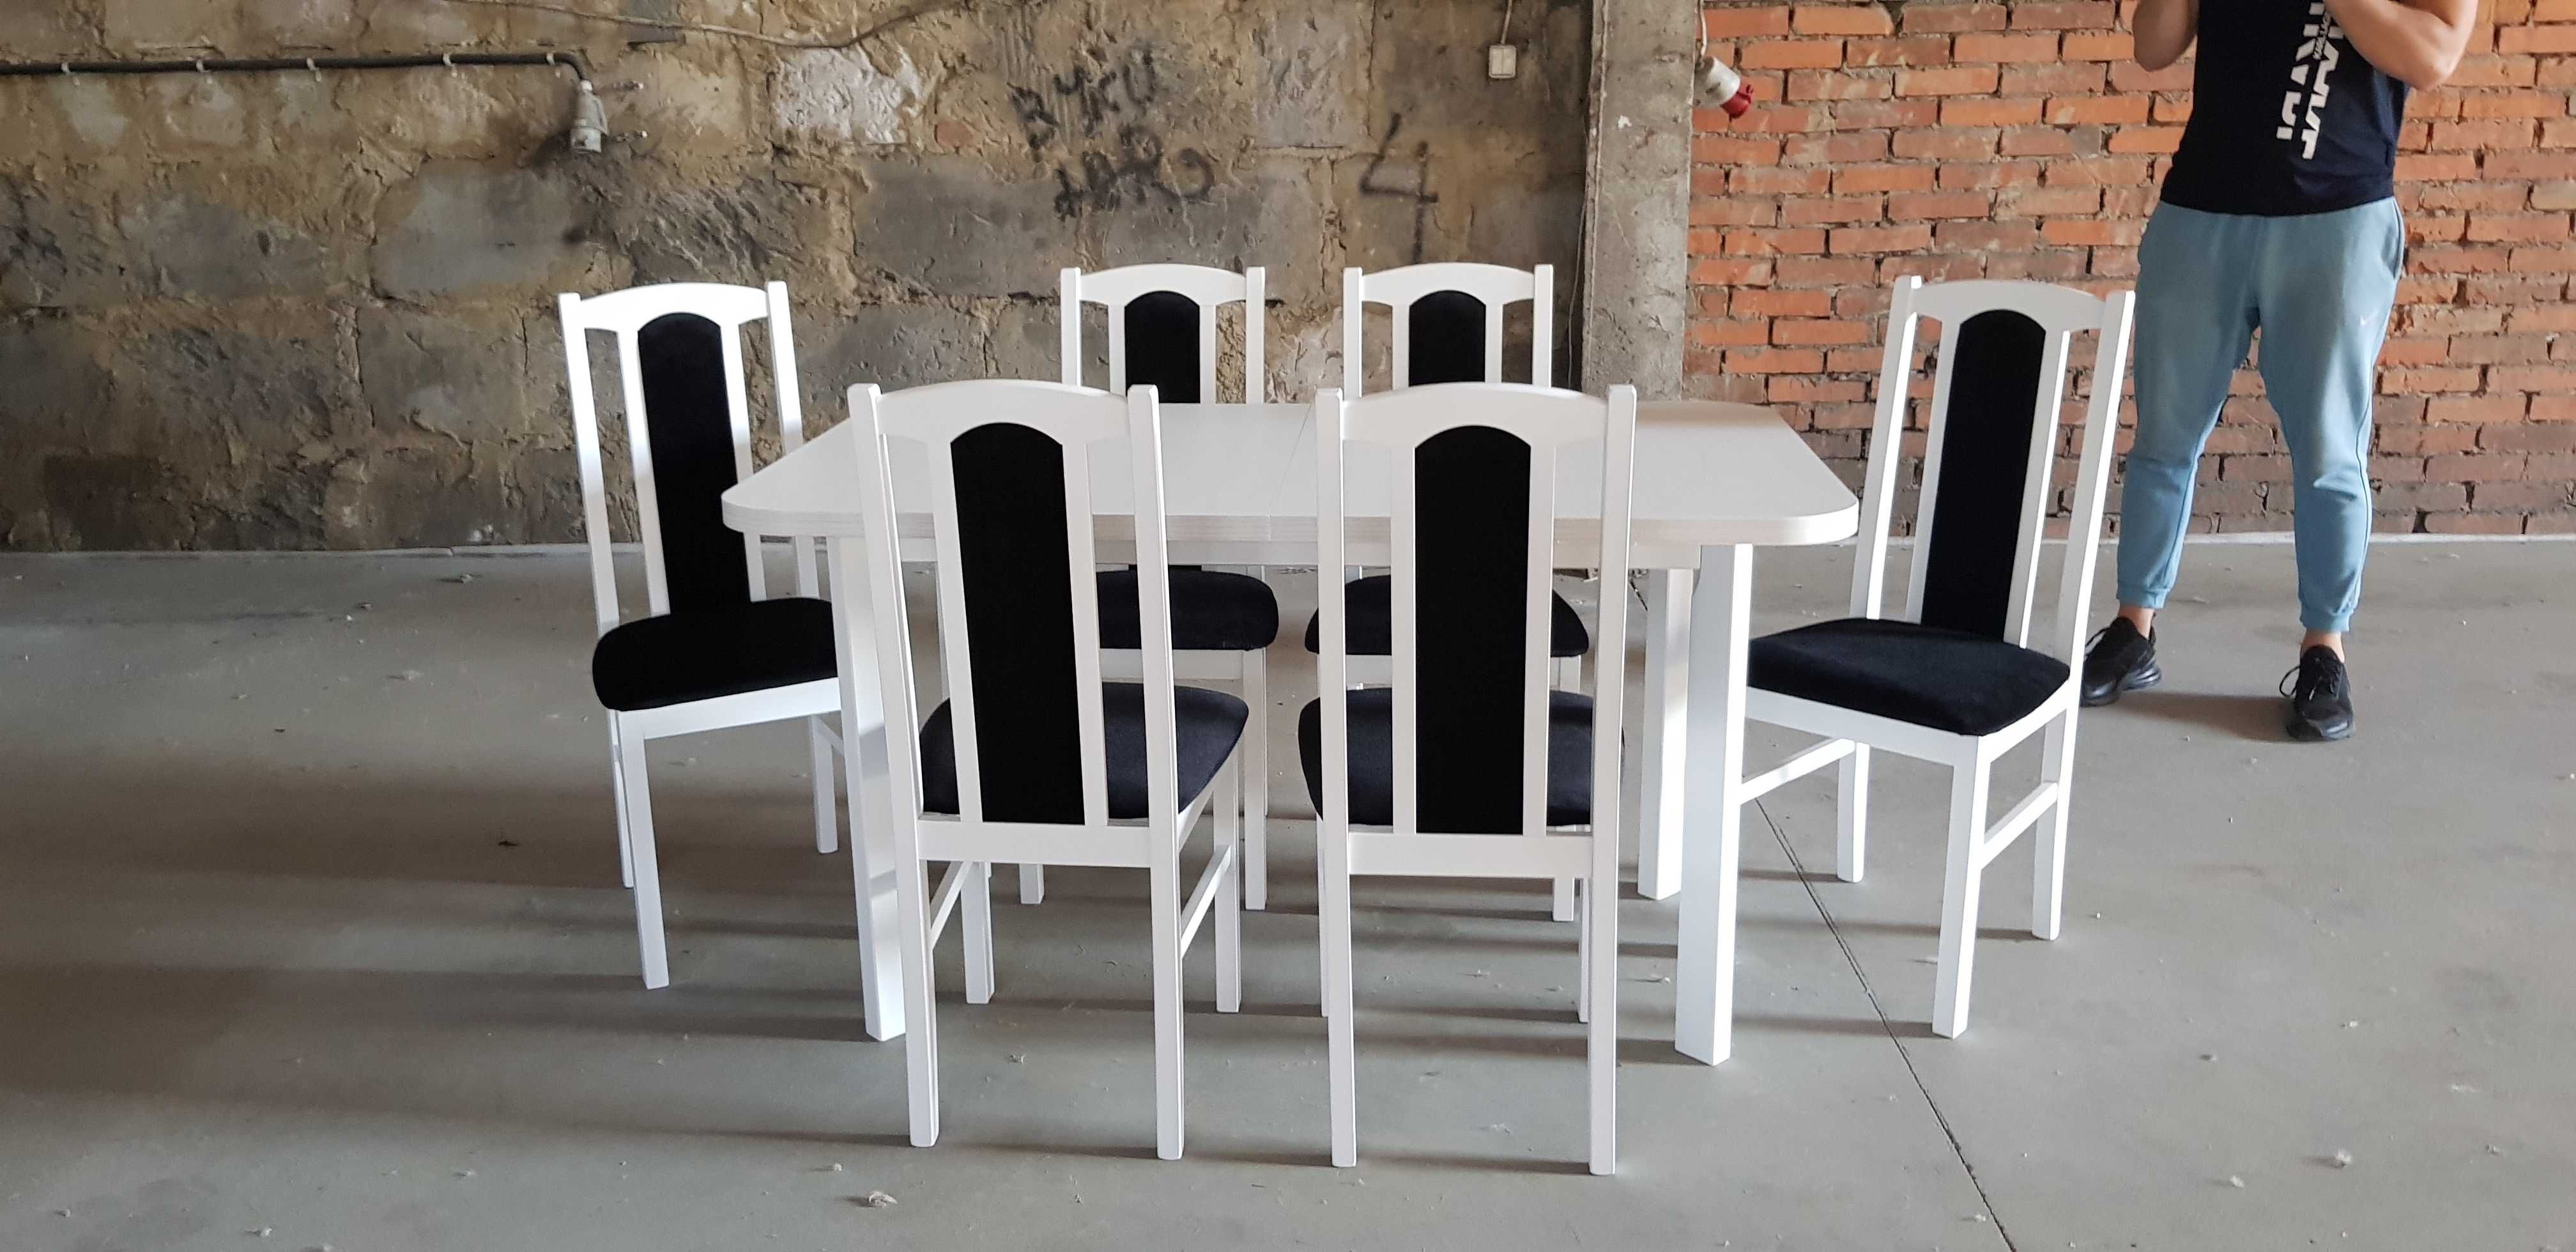 Nowe: Stół 80x140/180 + 6 krzeseł , BIAŁY + CZARNY , dostawa cała PL